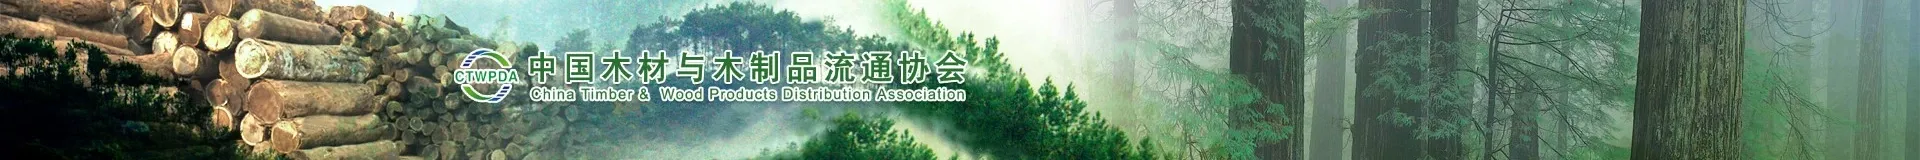 中国木材与木制品流通协会